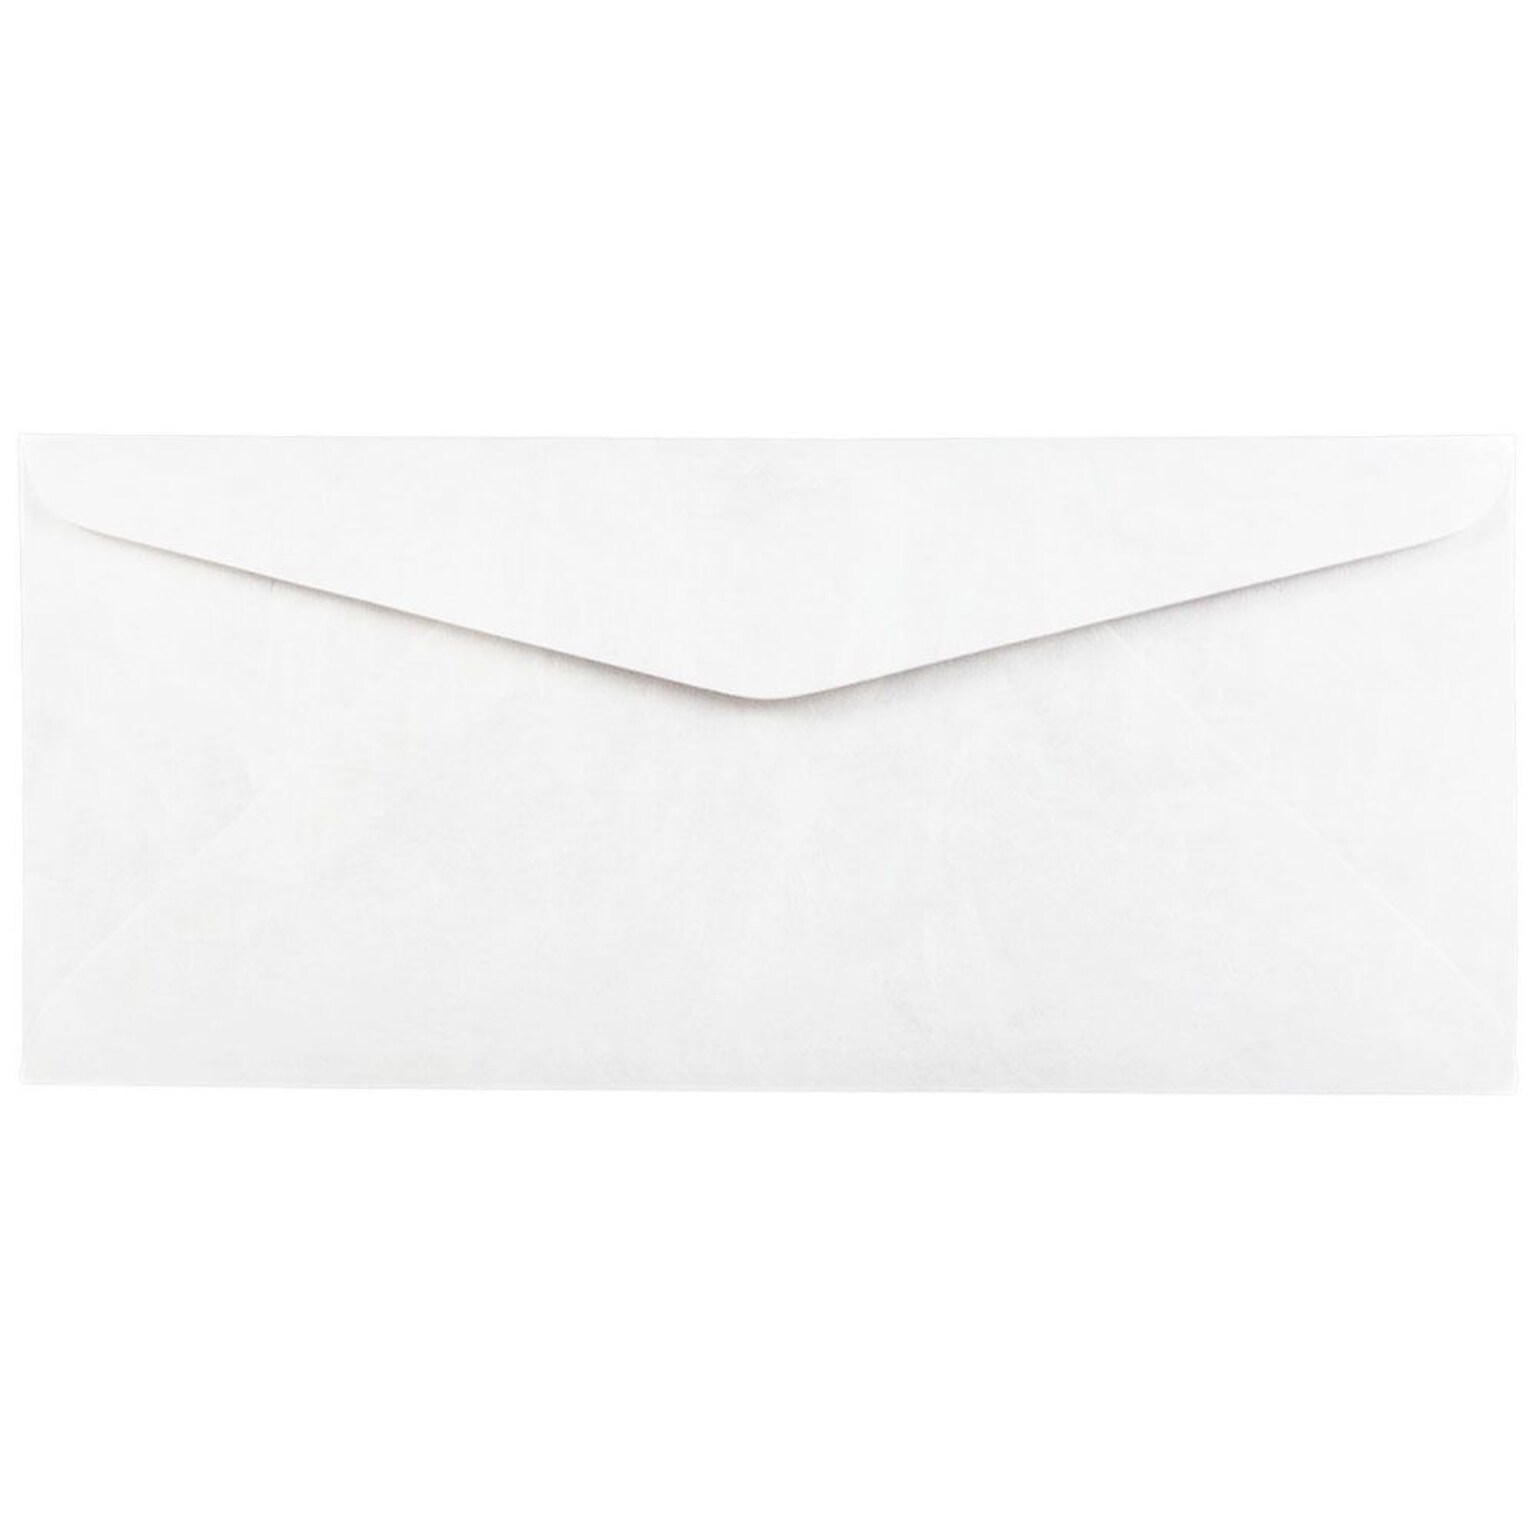 JAM Paper #10 Business Envelope, 4 1/8 x 9 1/2, White, 250/Box (2131077I)